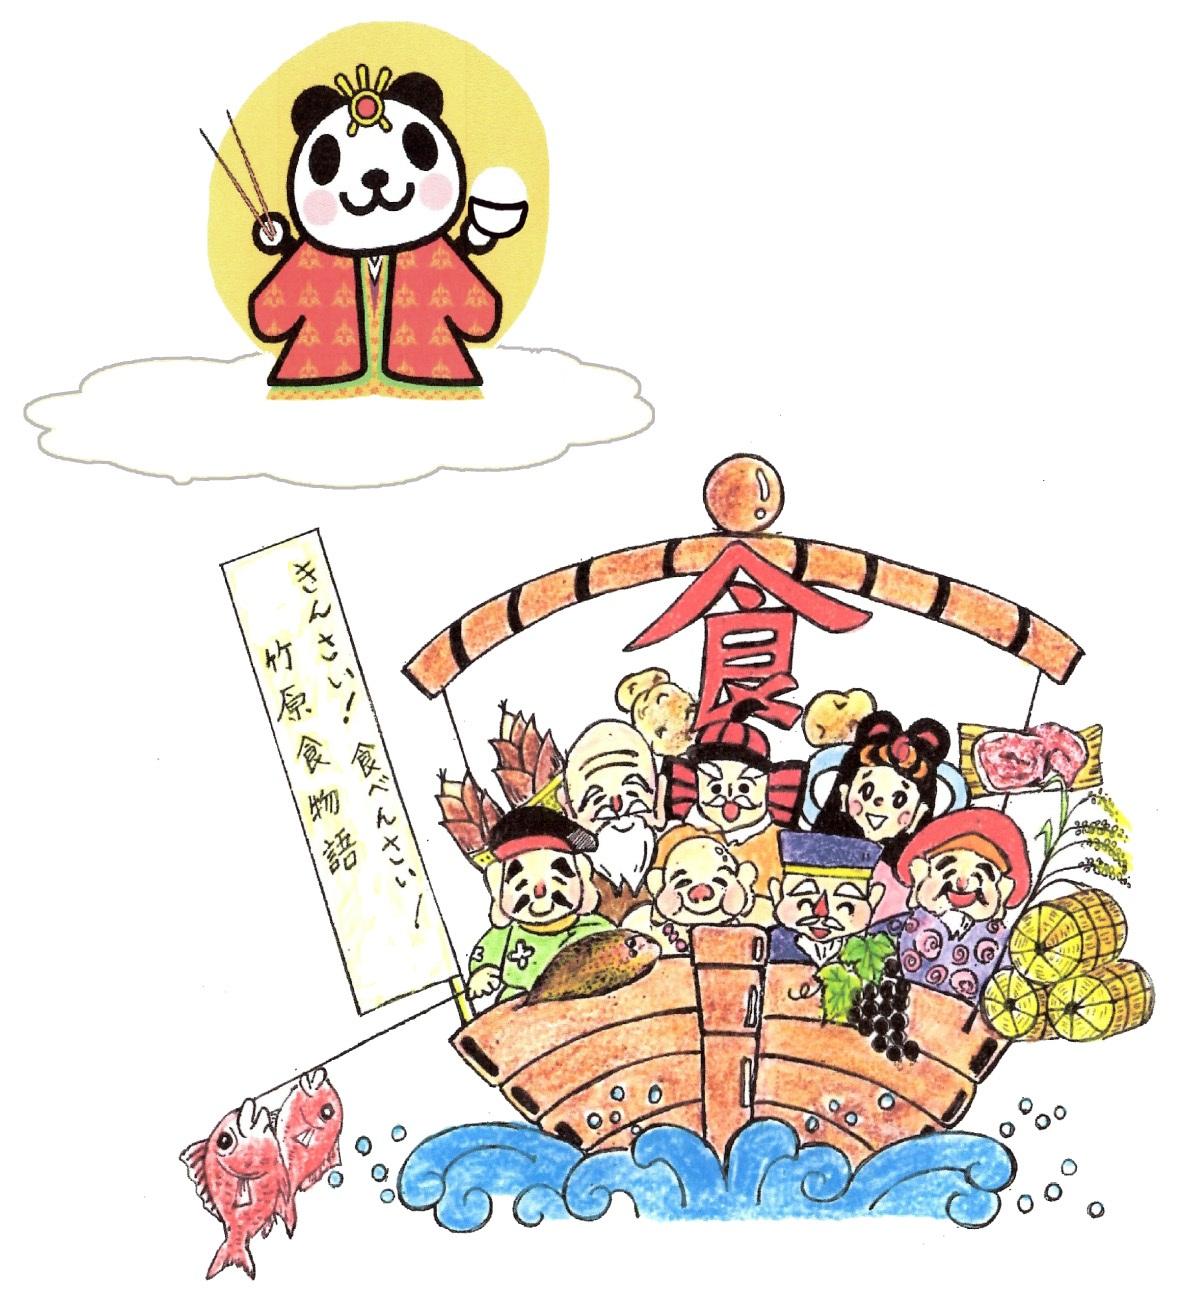 雲の上に乗って月の前に立つかぐやパンダと「食」の文字が掲げられた船に様々なキャラクターが乗っているイラスト